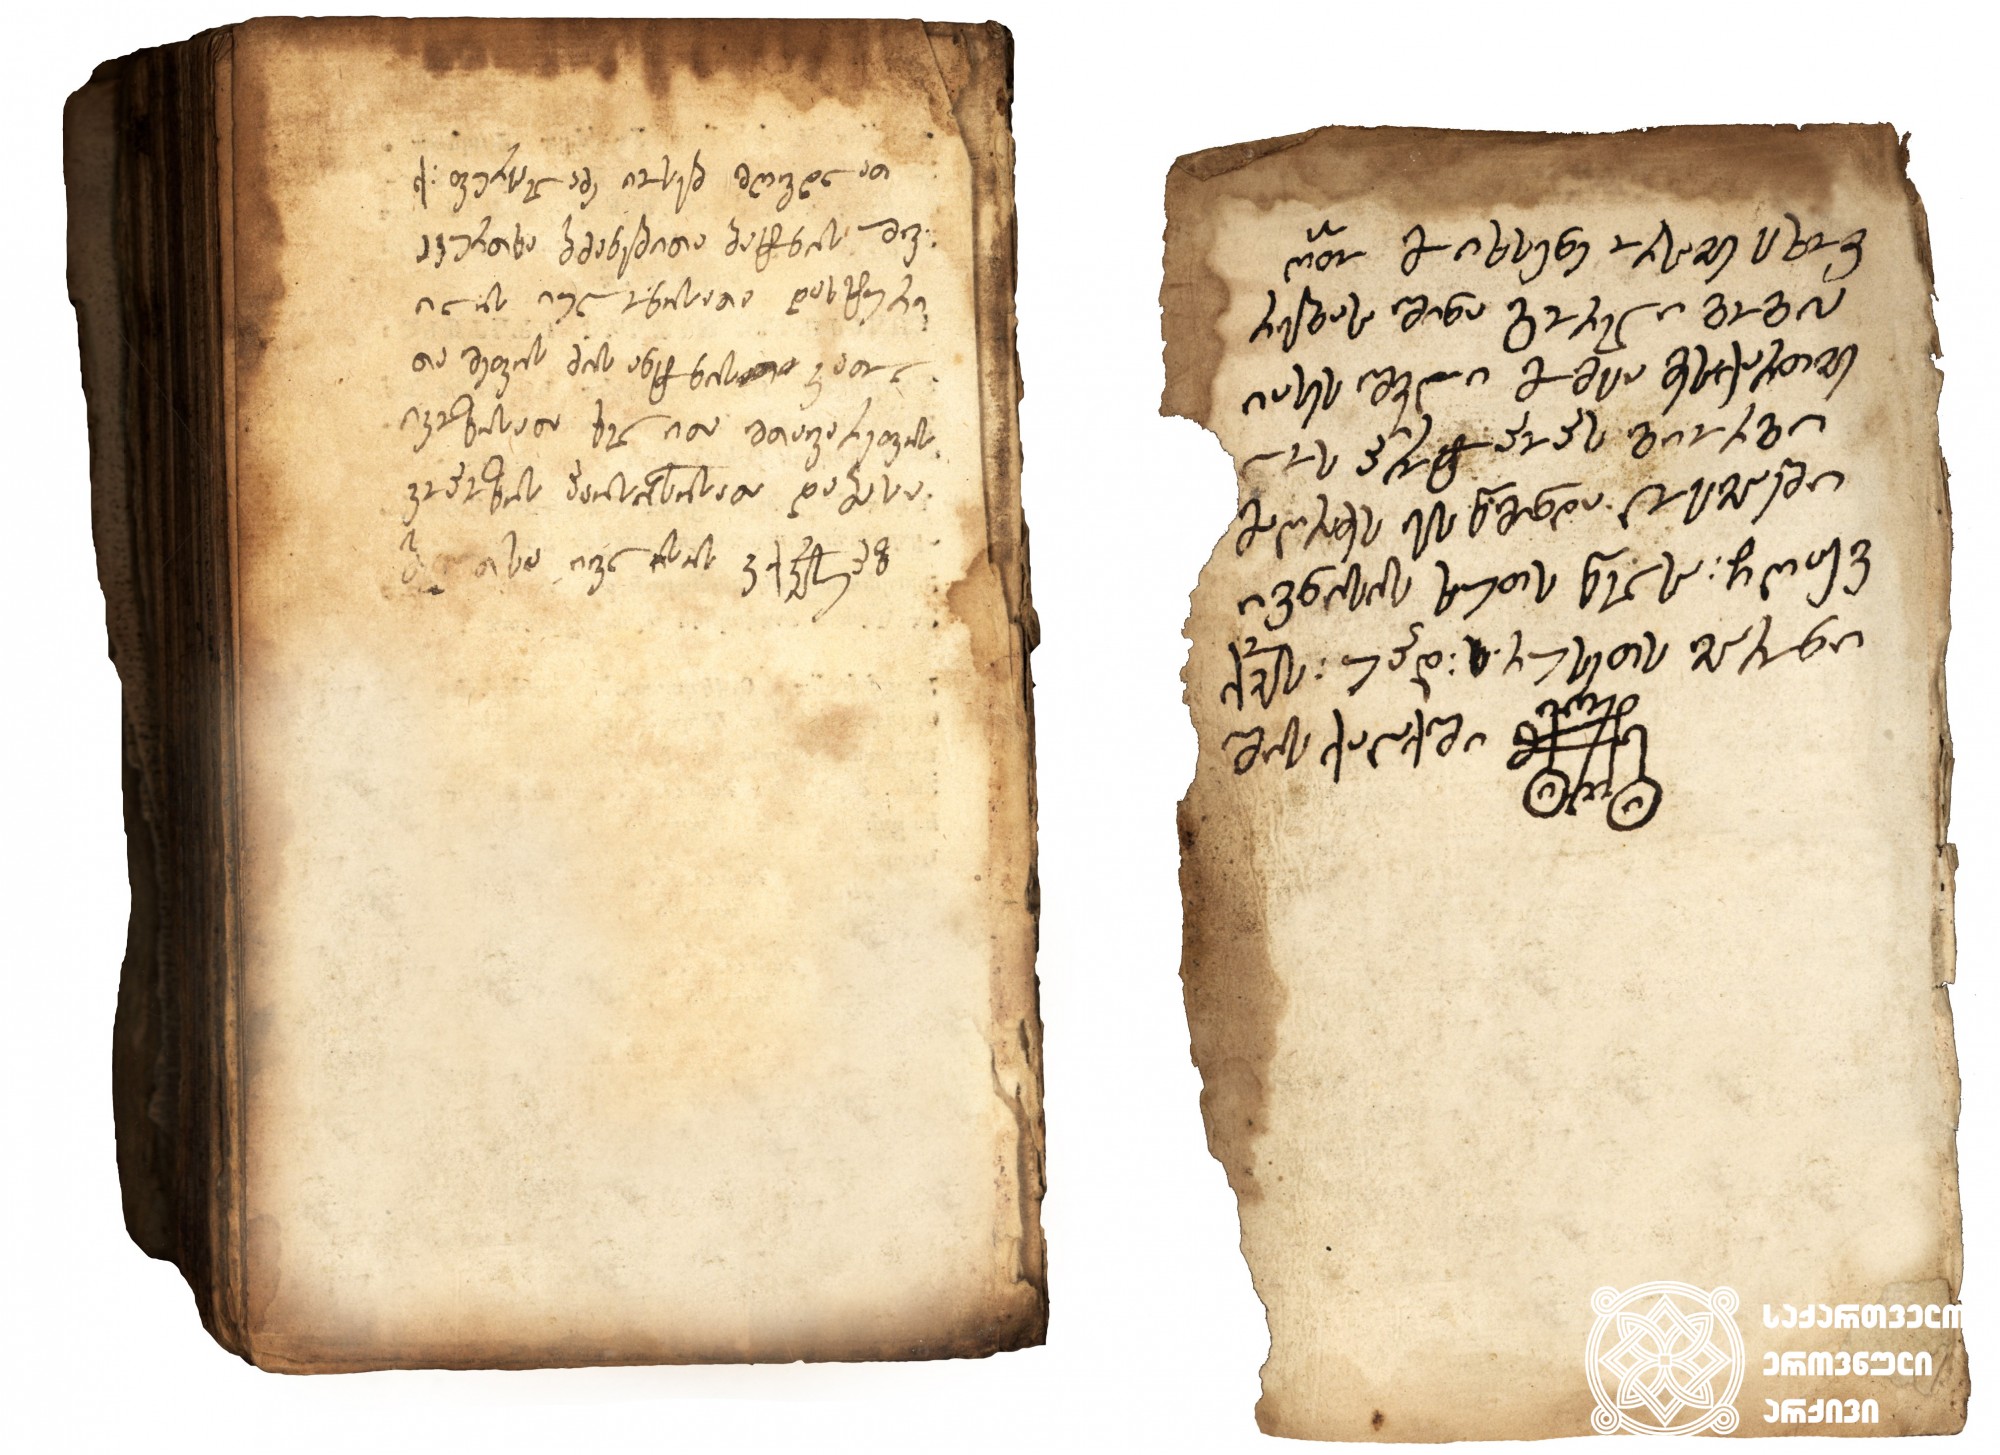 ლოცვანი <br>
ტფილისი, 1784 <br>
ერეკლე II-ის სტამბა <br>
მომგებელი: ქრისტეფორე კეჟერაშვილი <br>
<br>
Prayer Book<br>
Tfilisi, 1784<br>
Printing house of Erekle II <br>
Customer: Kristephore Kezherashvili